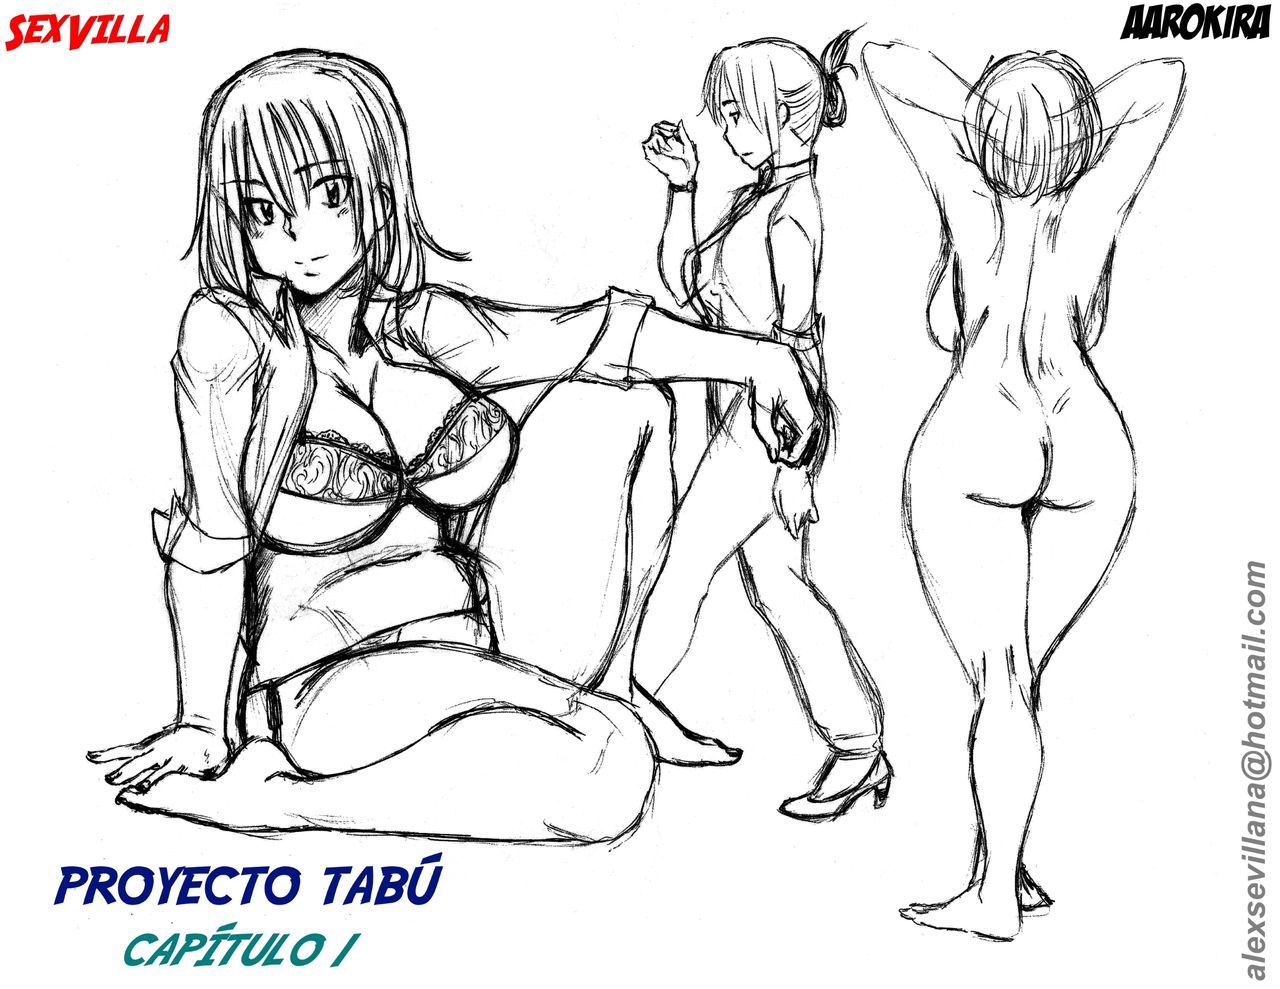 Proyecto Tabu 1 Aarokira 01